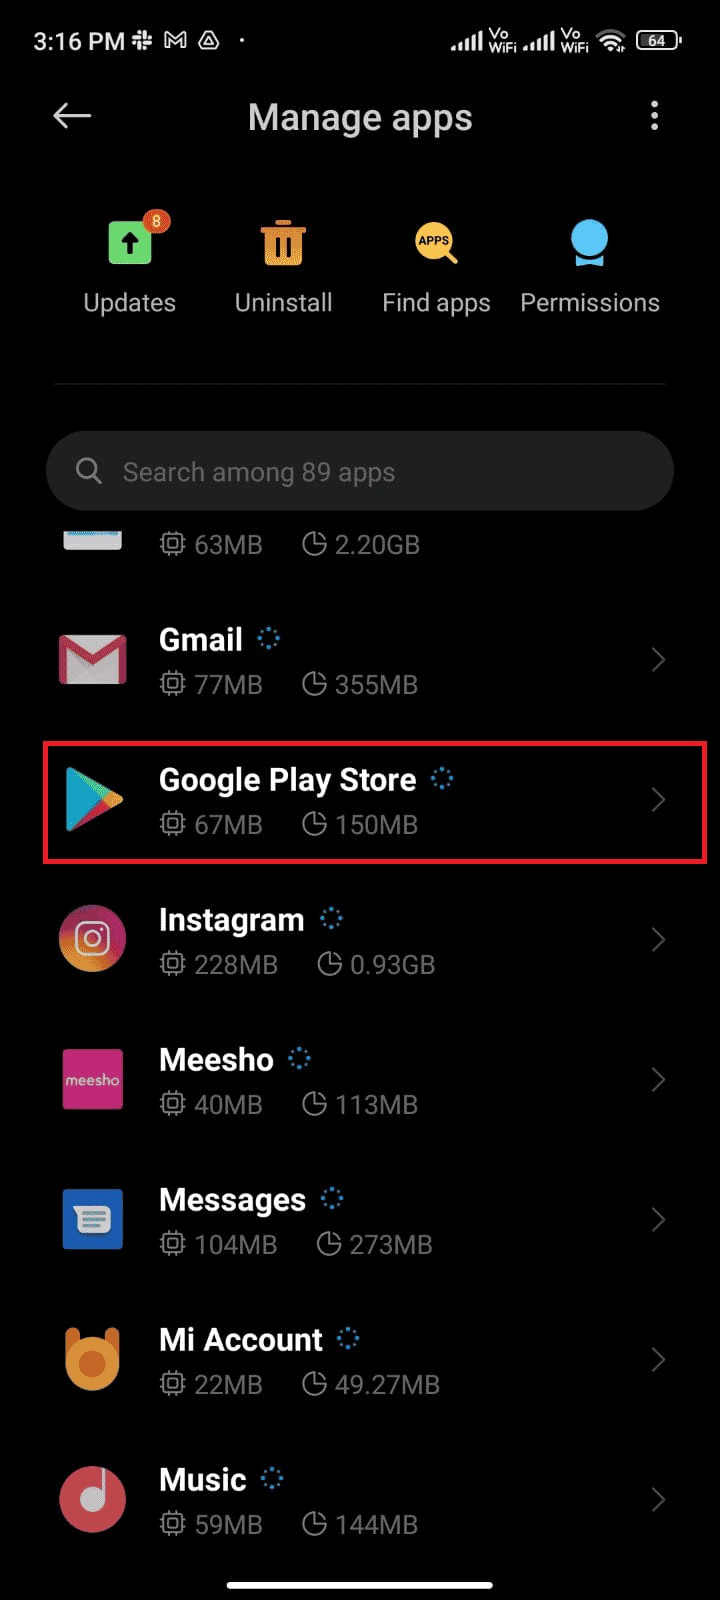 แก้ไขรหัสข้อผิดพลาดของ Google Play 495 บน Android